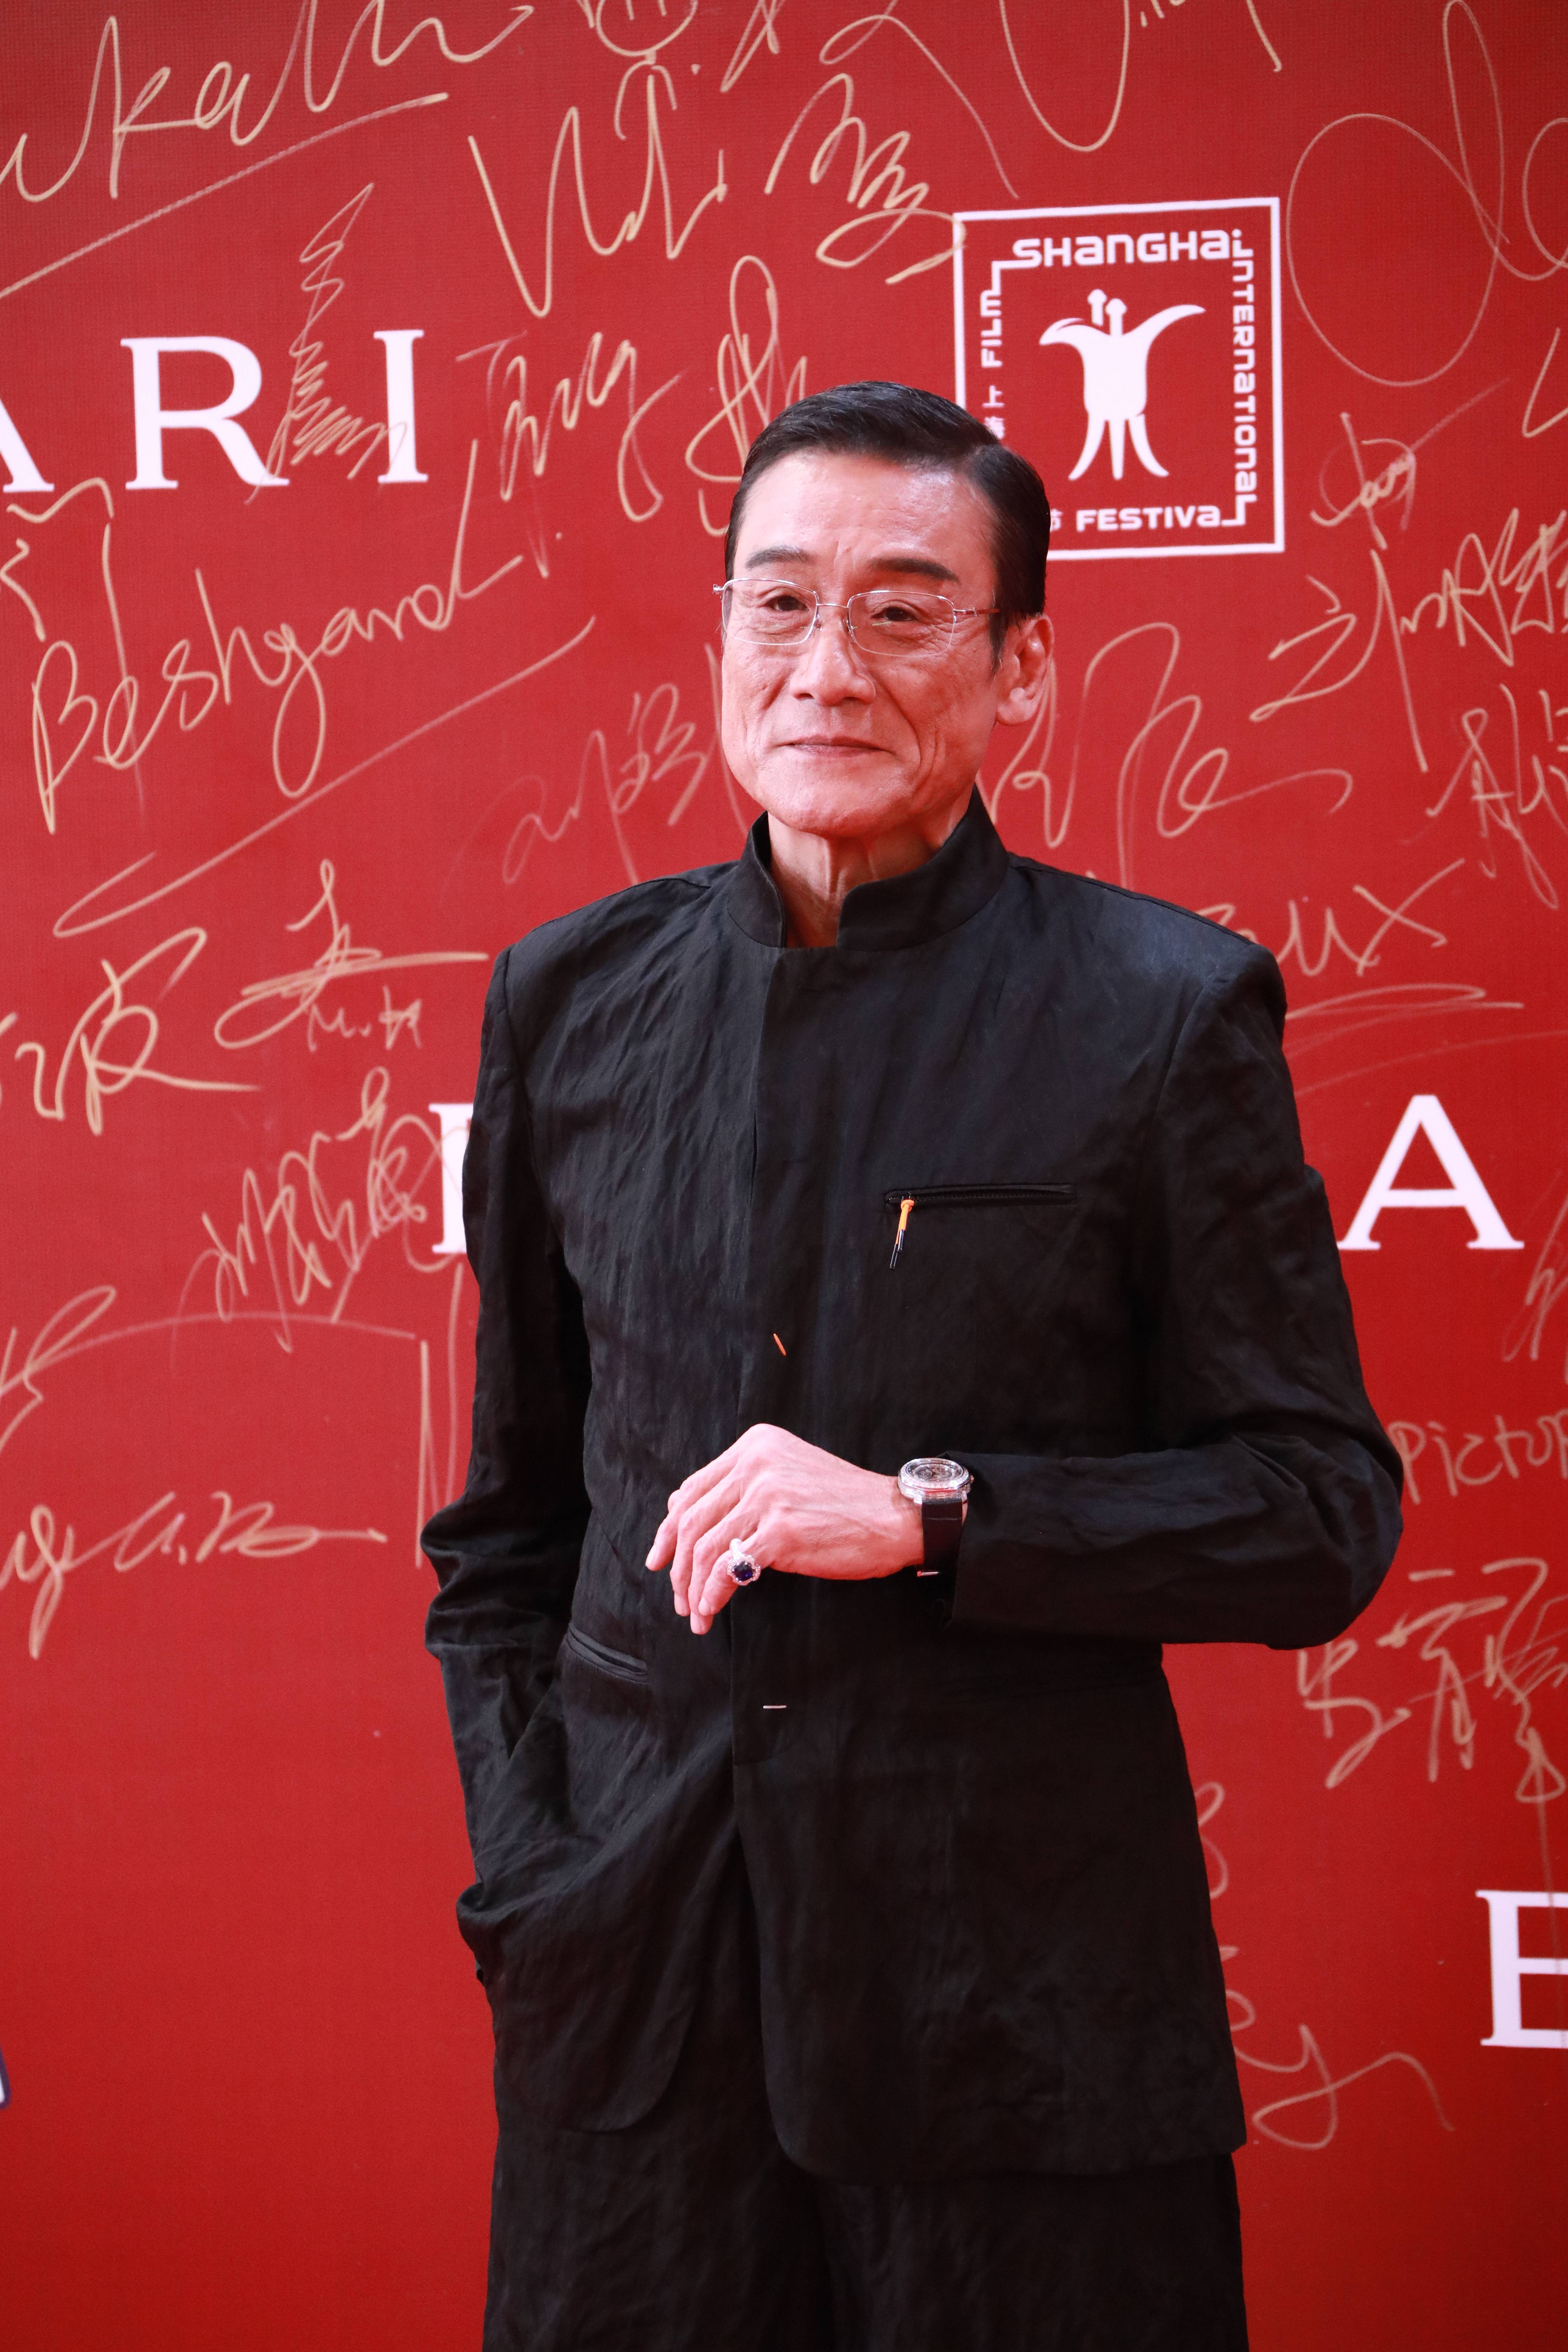 葛优周迅王俊凯吴磊等出席 上海国际电影节举行闭幕仪式